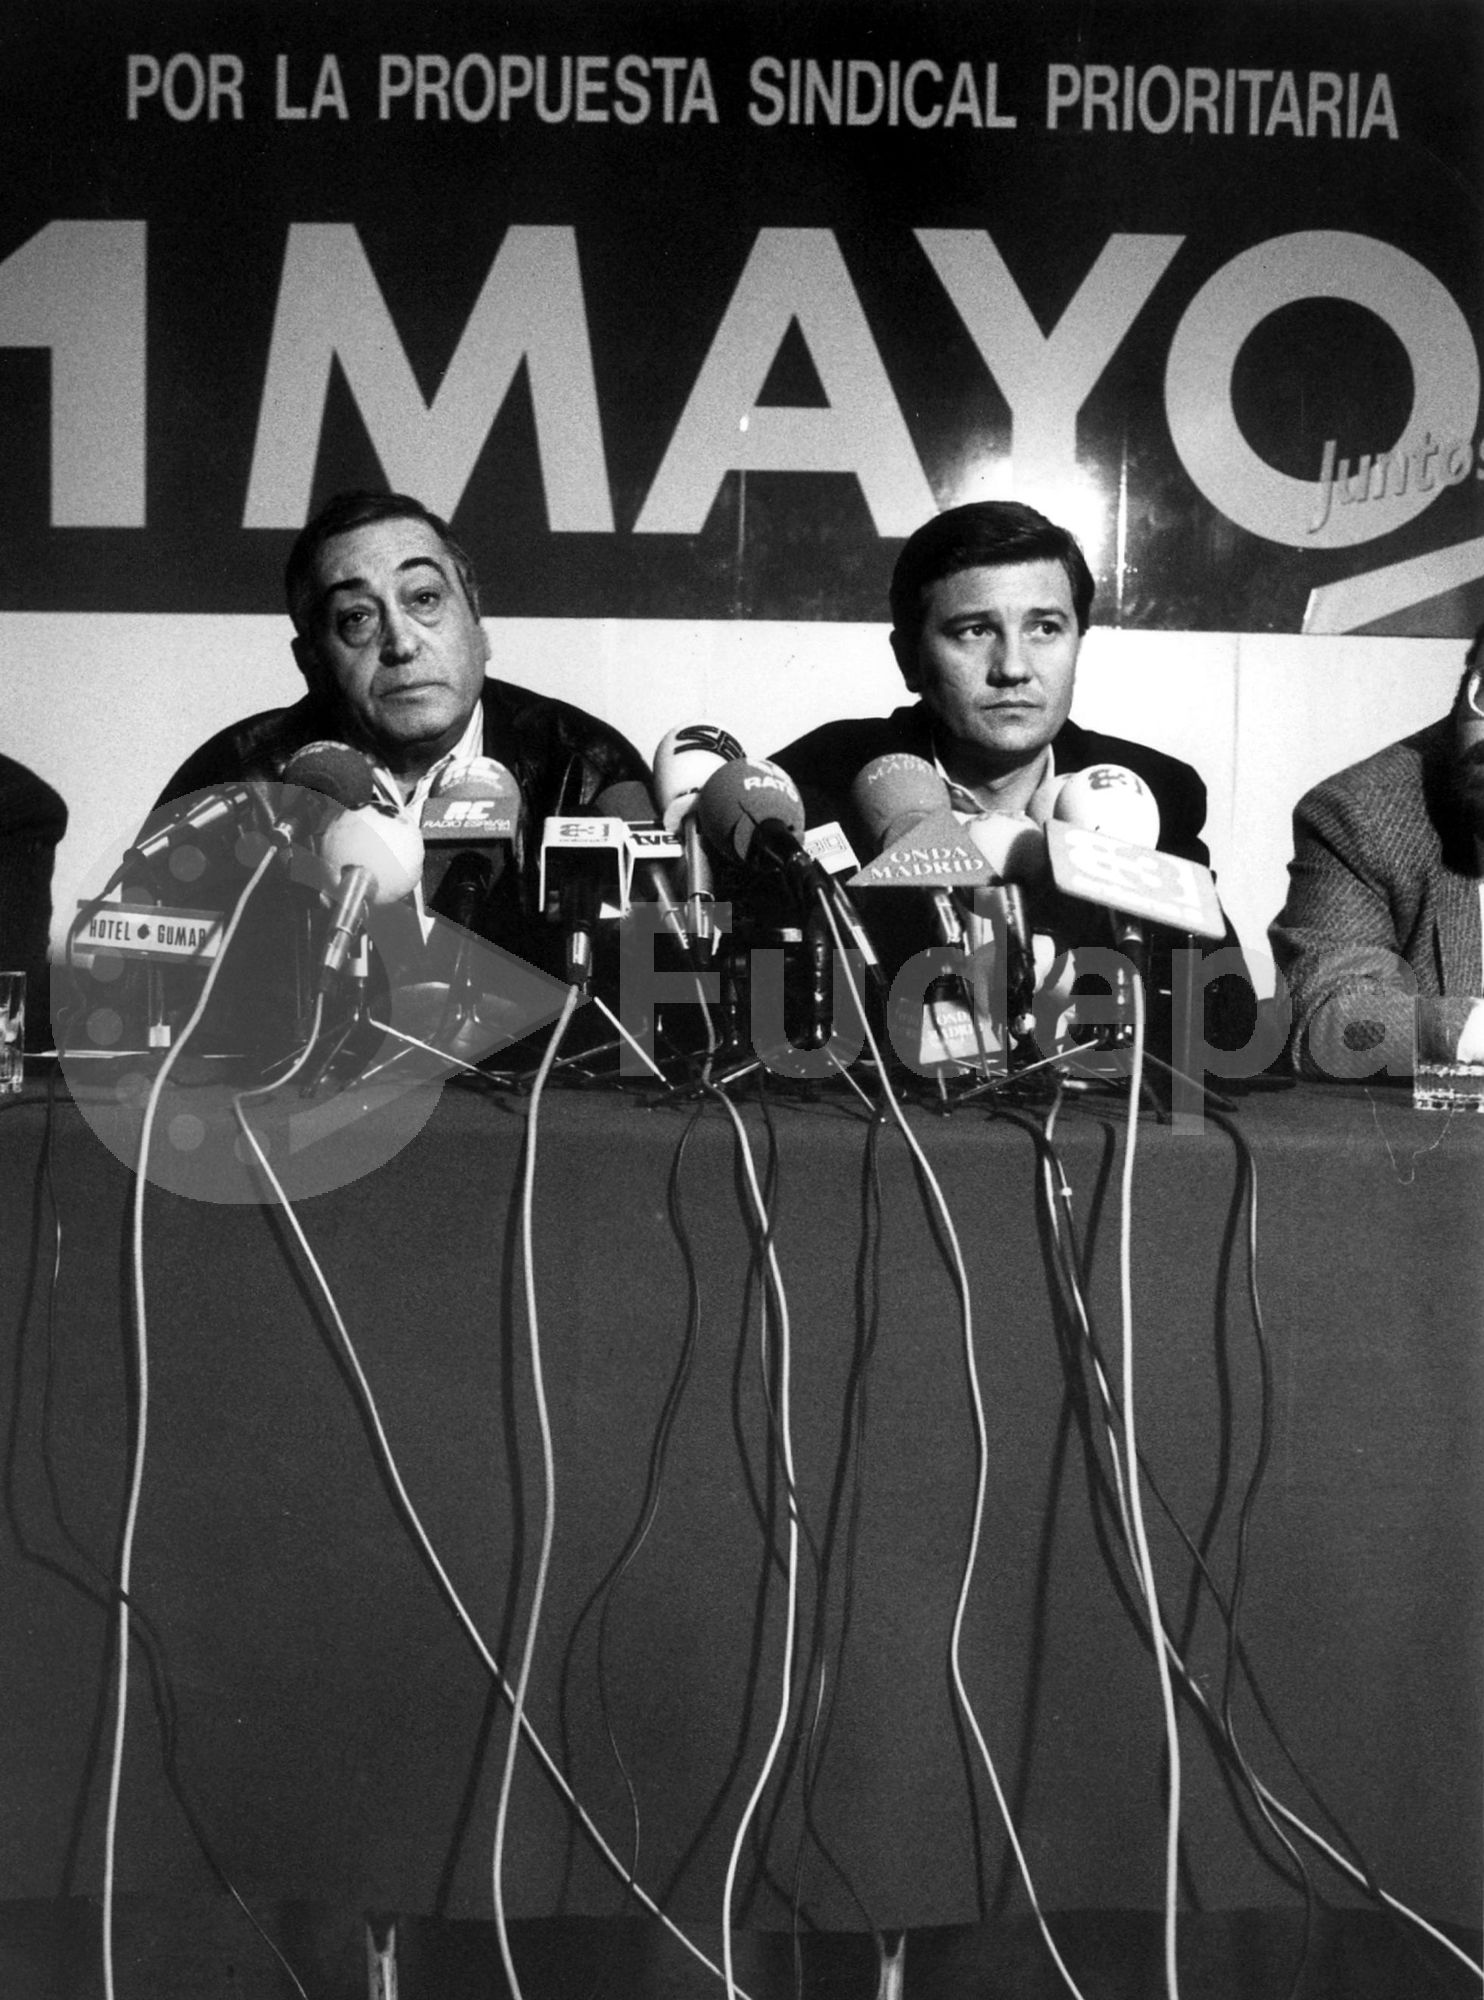 Los secretarios generales de UGT, Nicolás Redondo (a la izquieda), y de CC OO, Antonio Gutiérrez, en la presentación de los actos del Primero de Mayo de 1990